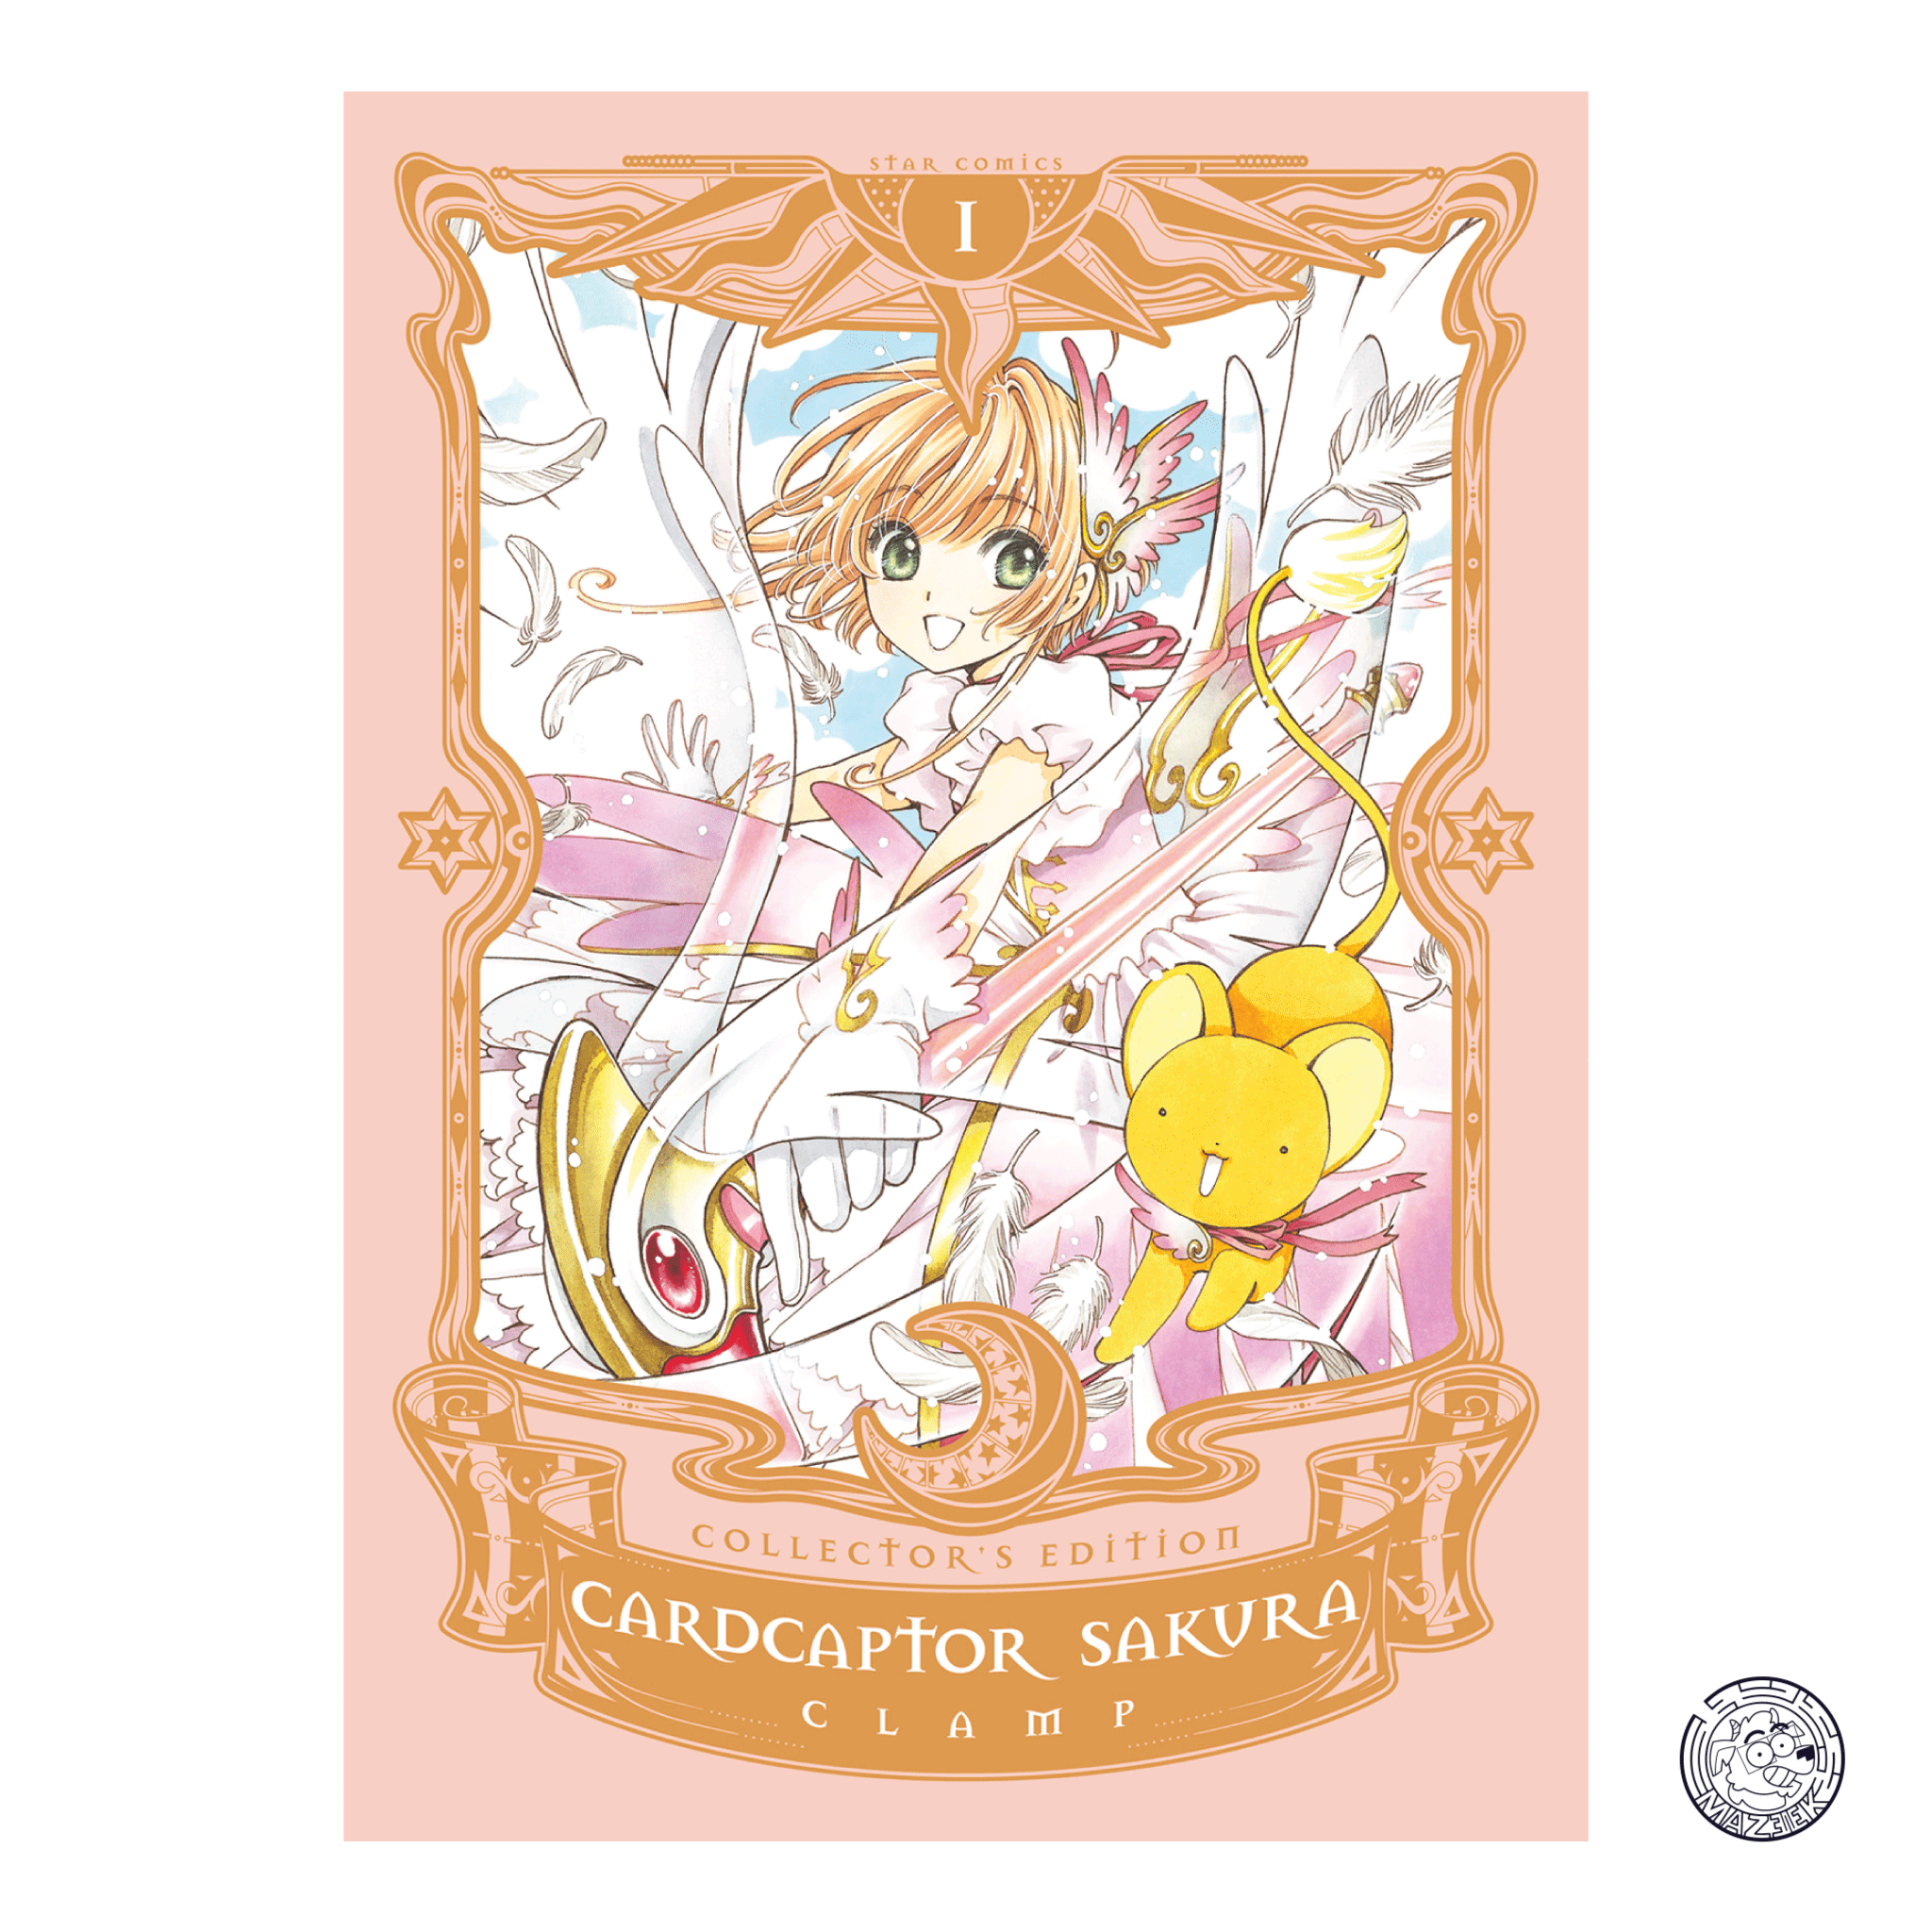 Cardcaptor Sakura Collector’s Edition 01